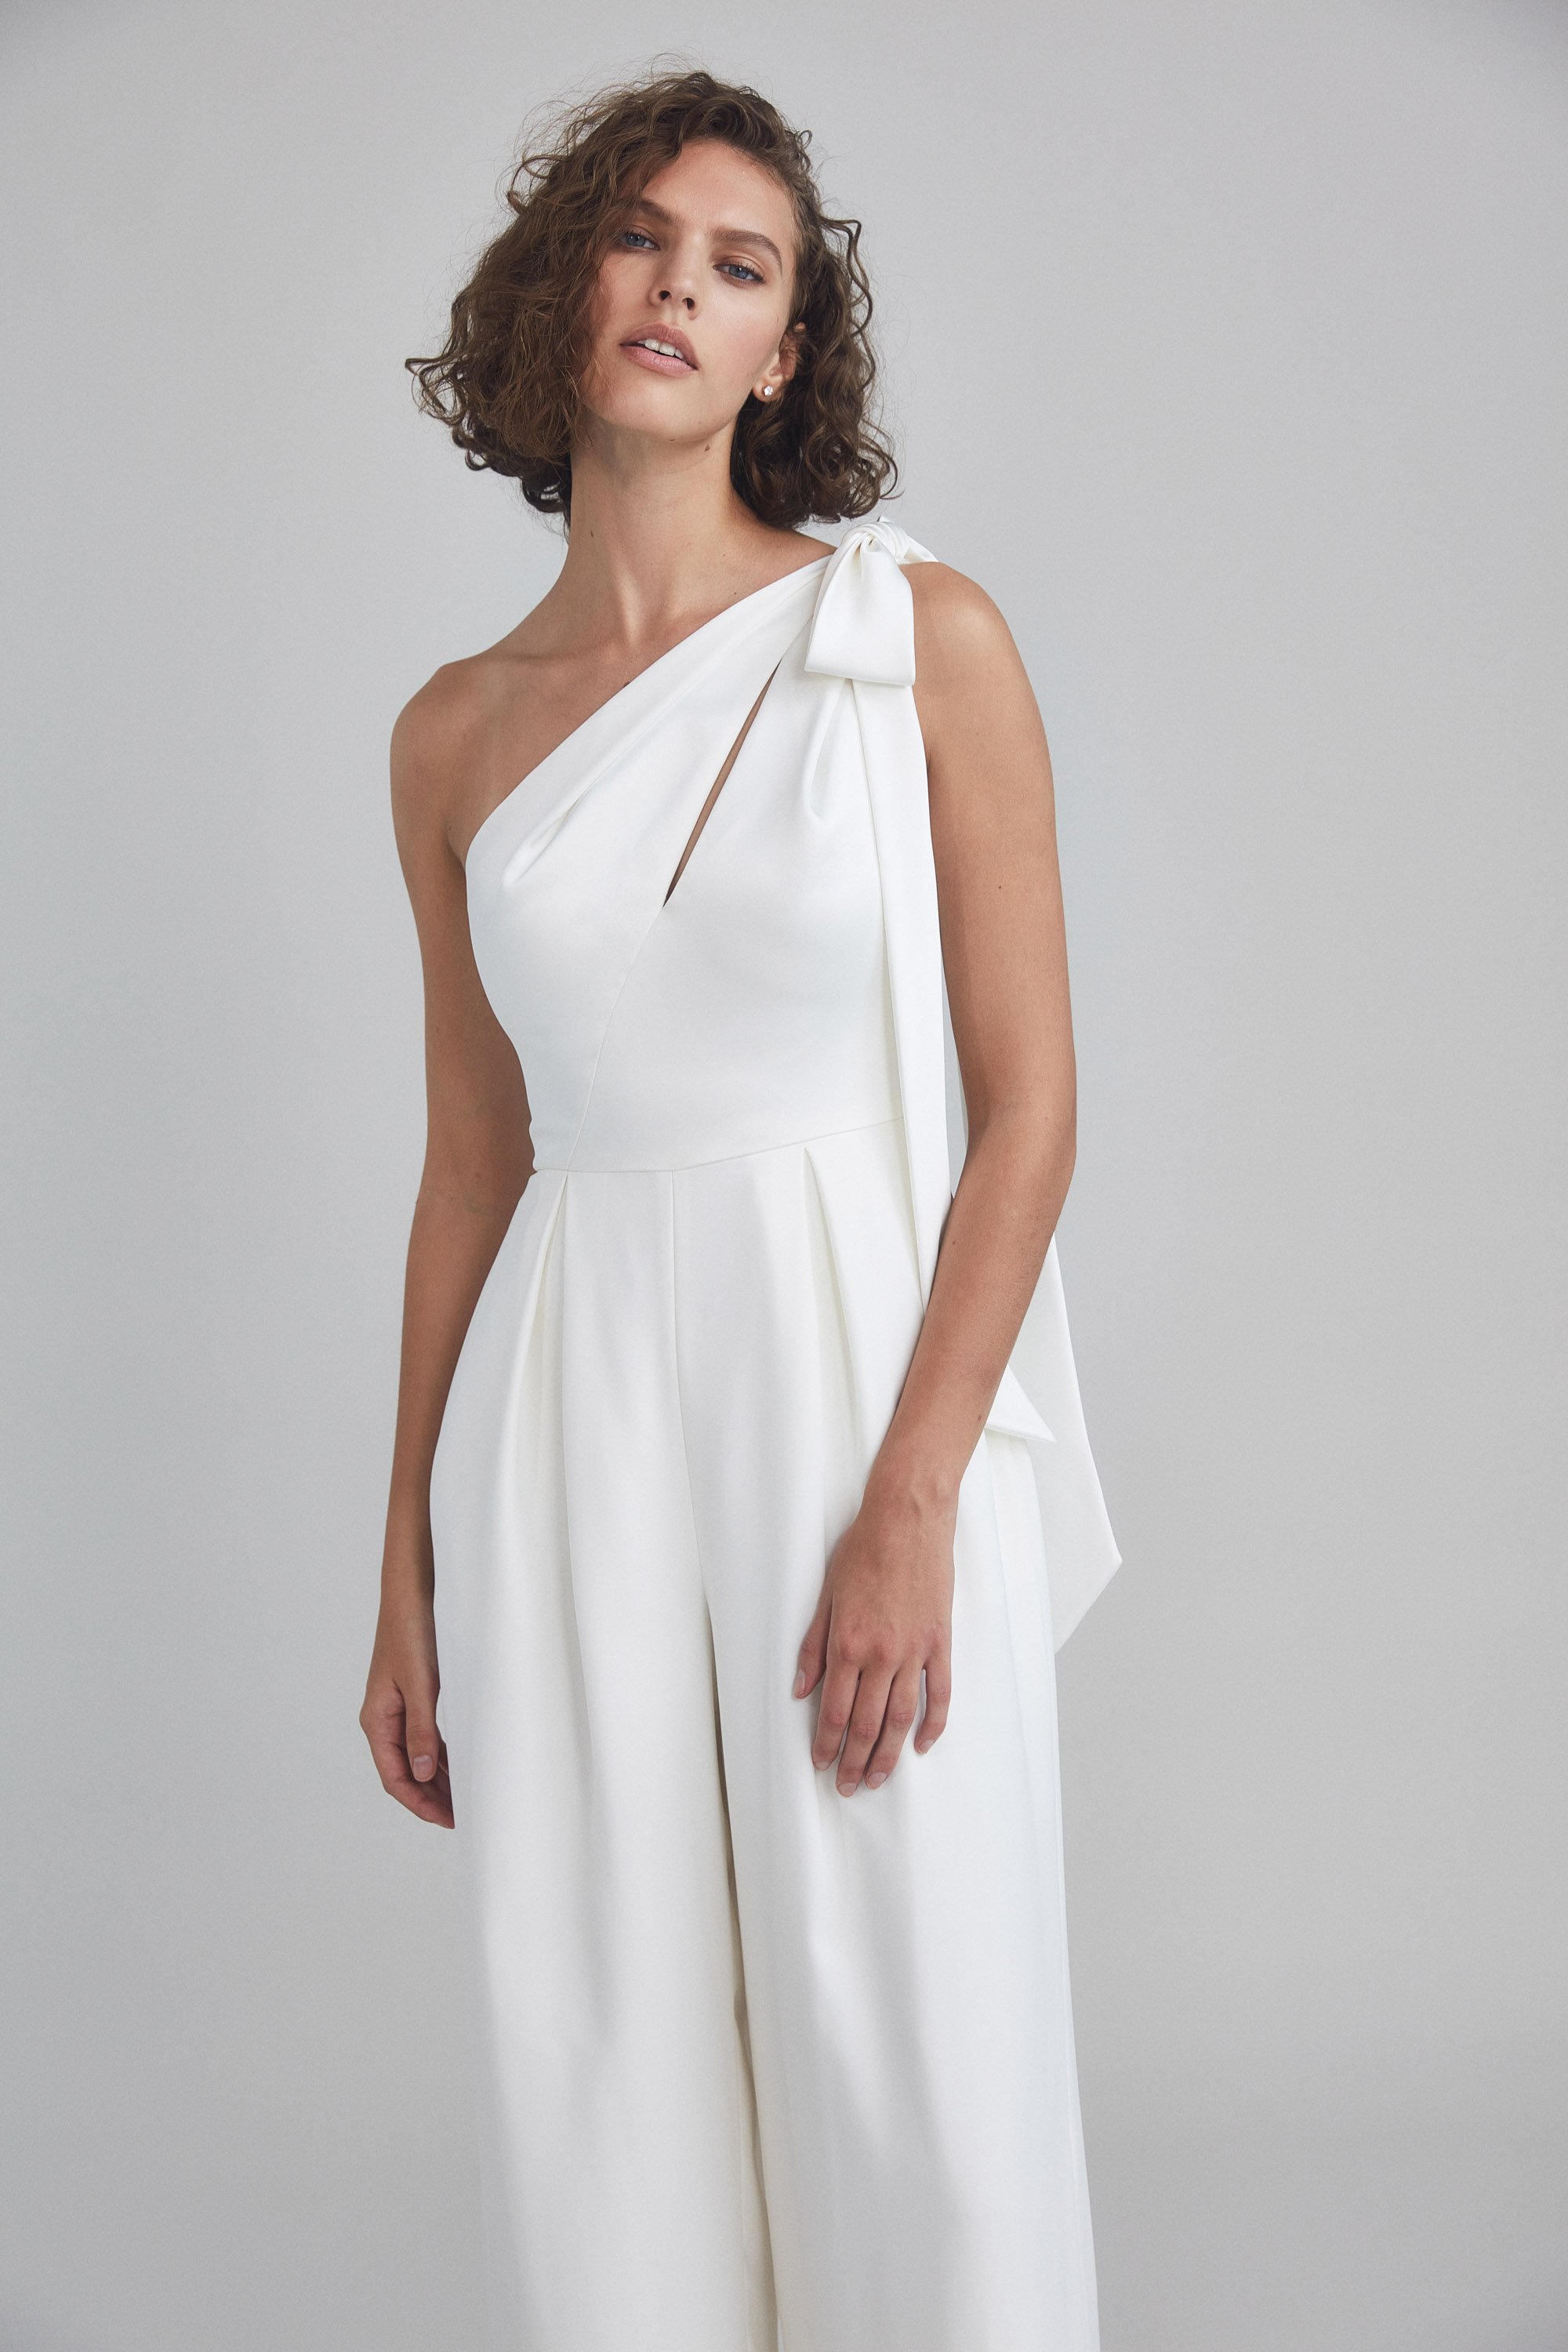 Amsale + Little White Dress + LW194 + Fluid Satin + One-shoulder + Bow + Pockets + Mood2.jpg